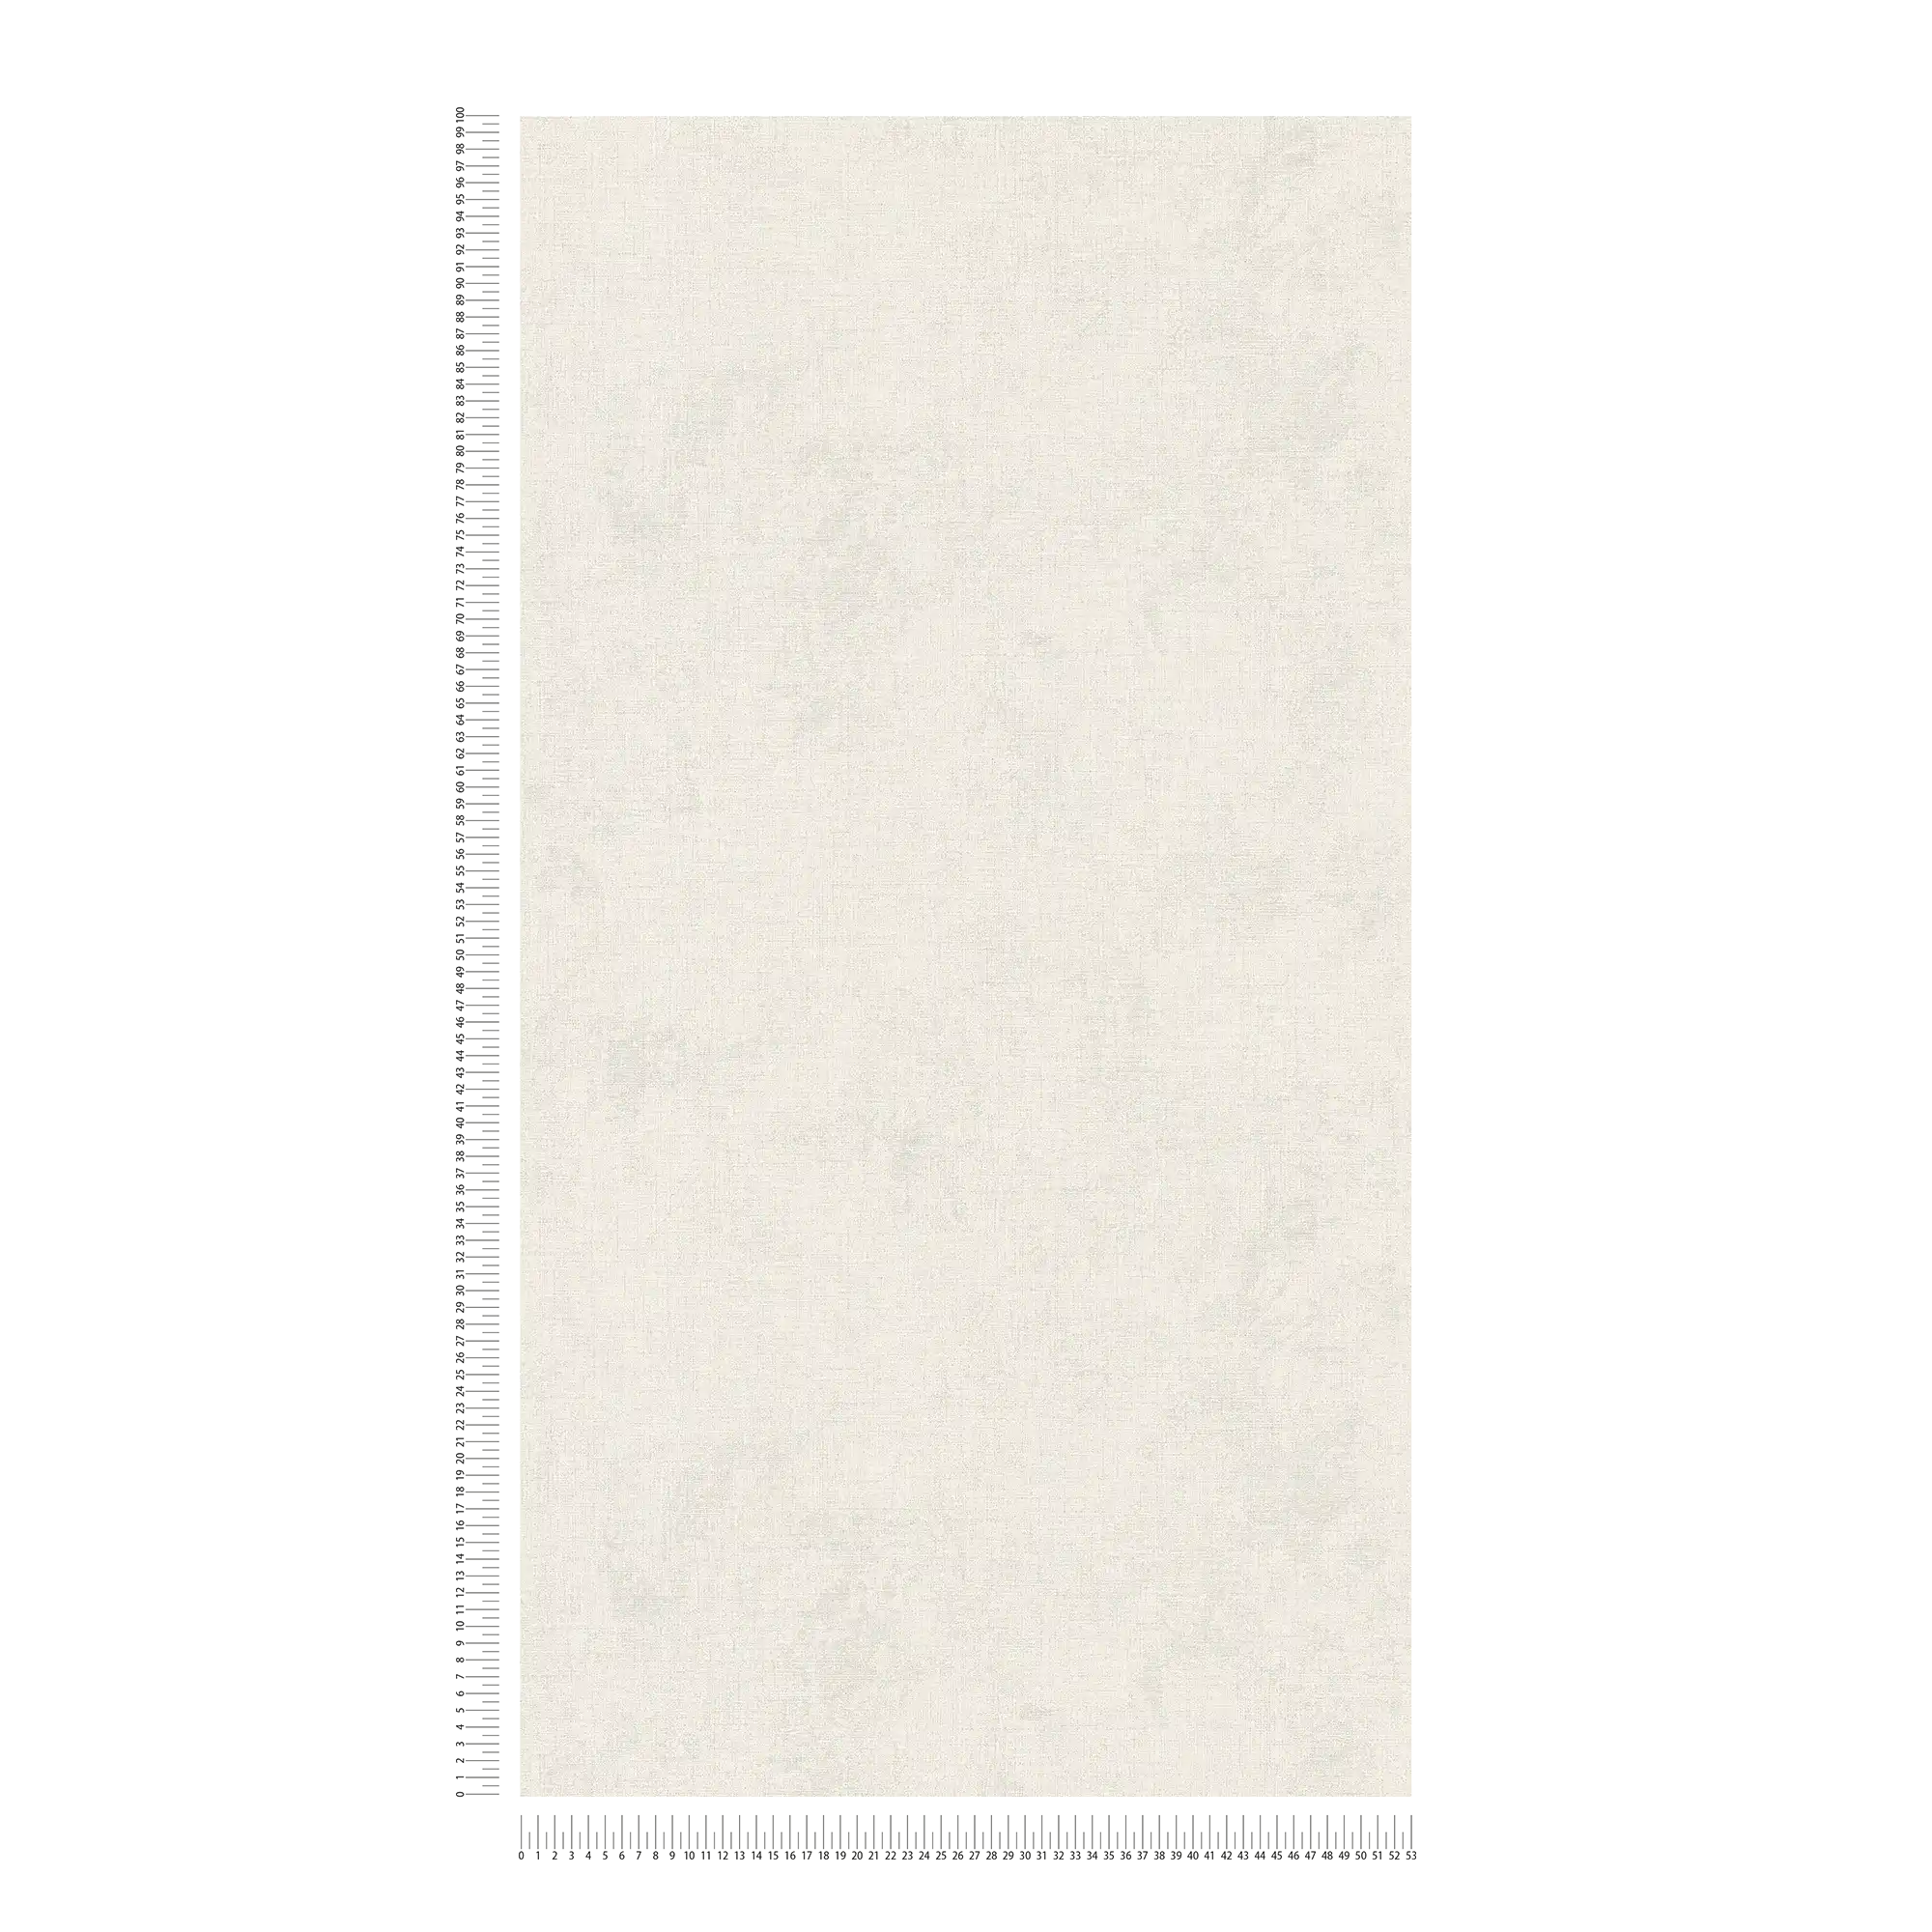             Linen look wallpaper plain, neutral - cream
        